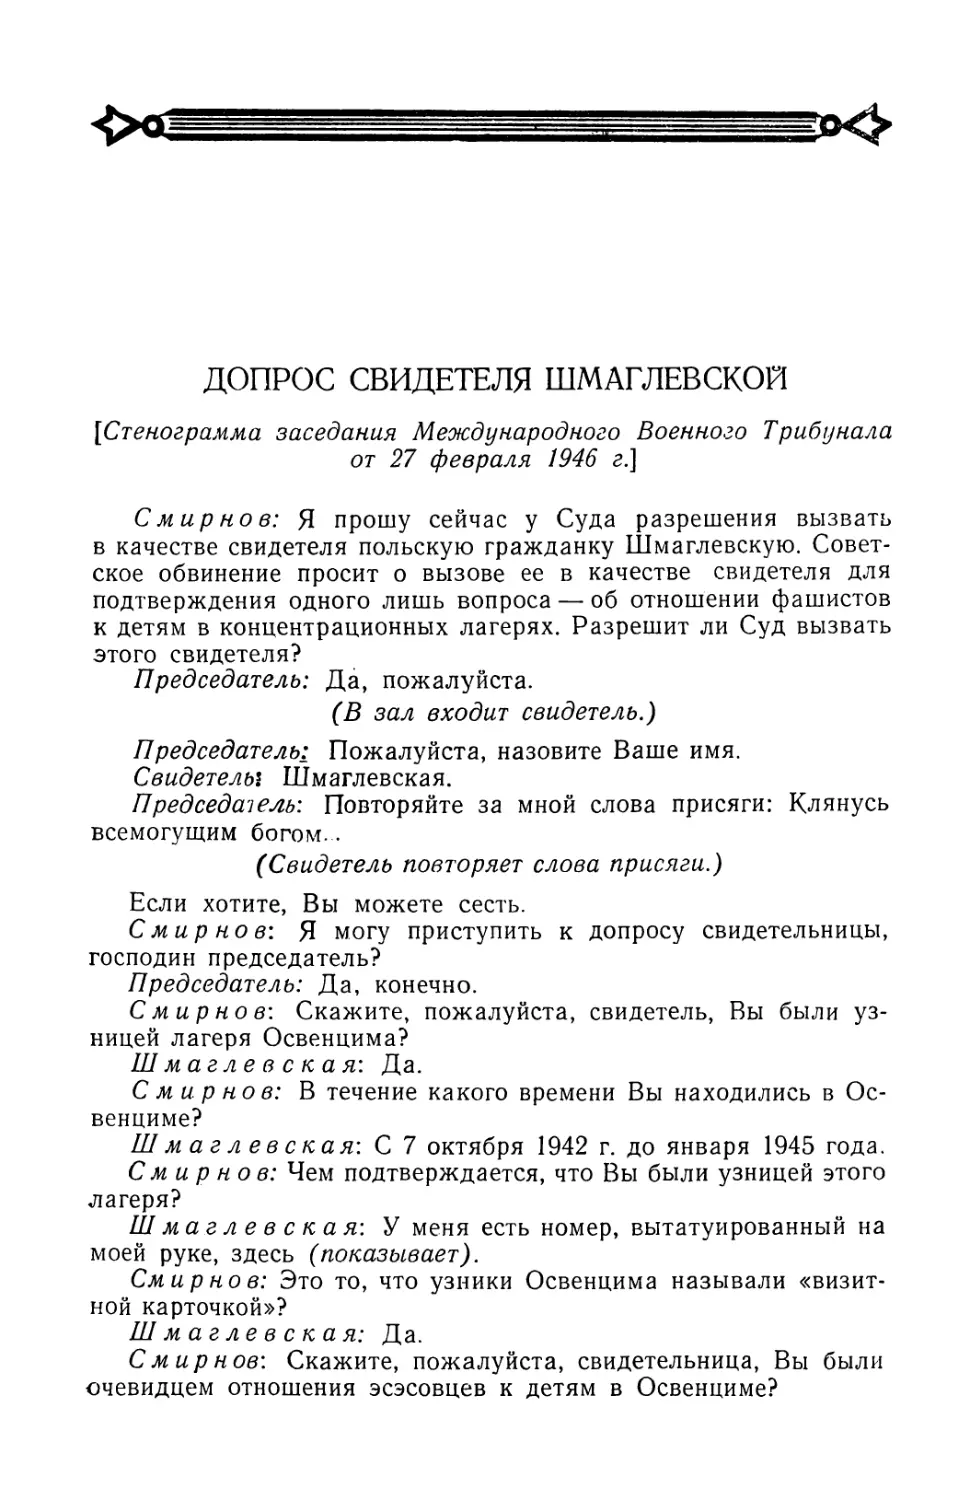 Допрос свидетеля Шмаглевской в заседании Трибунала 27 февраля 1946 г.